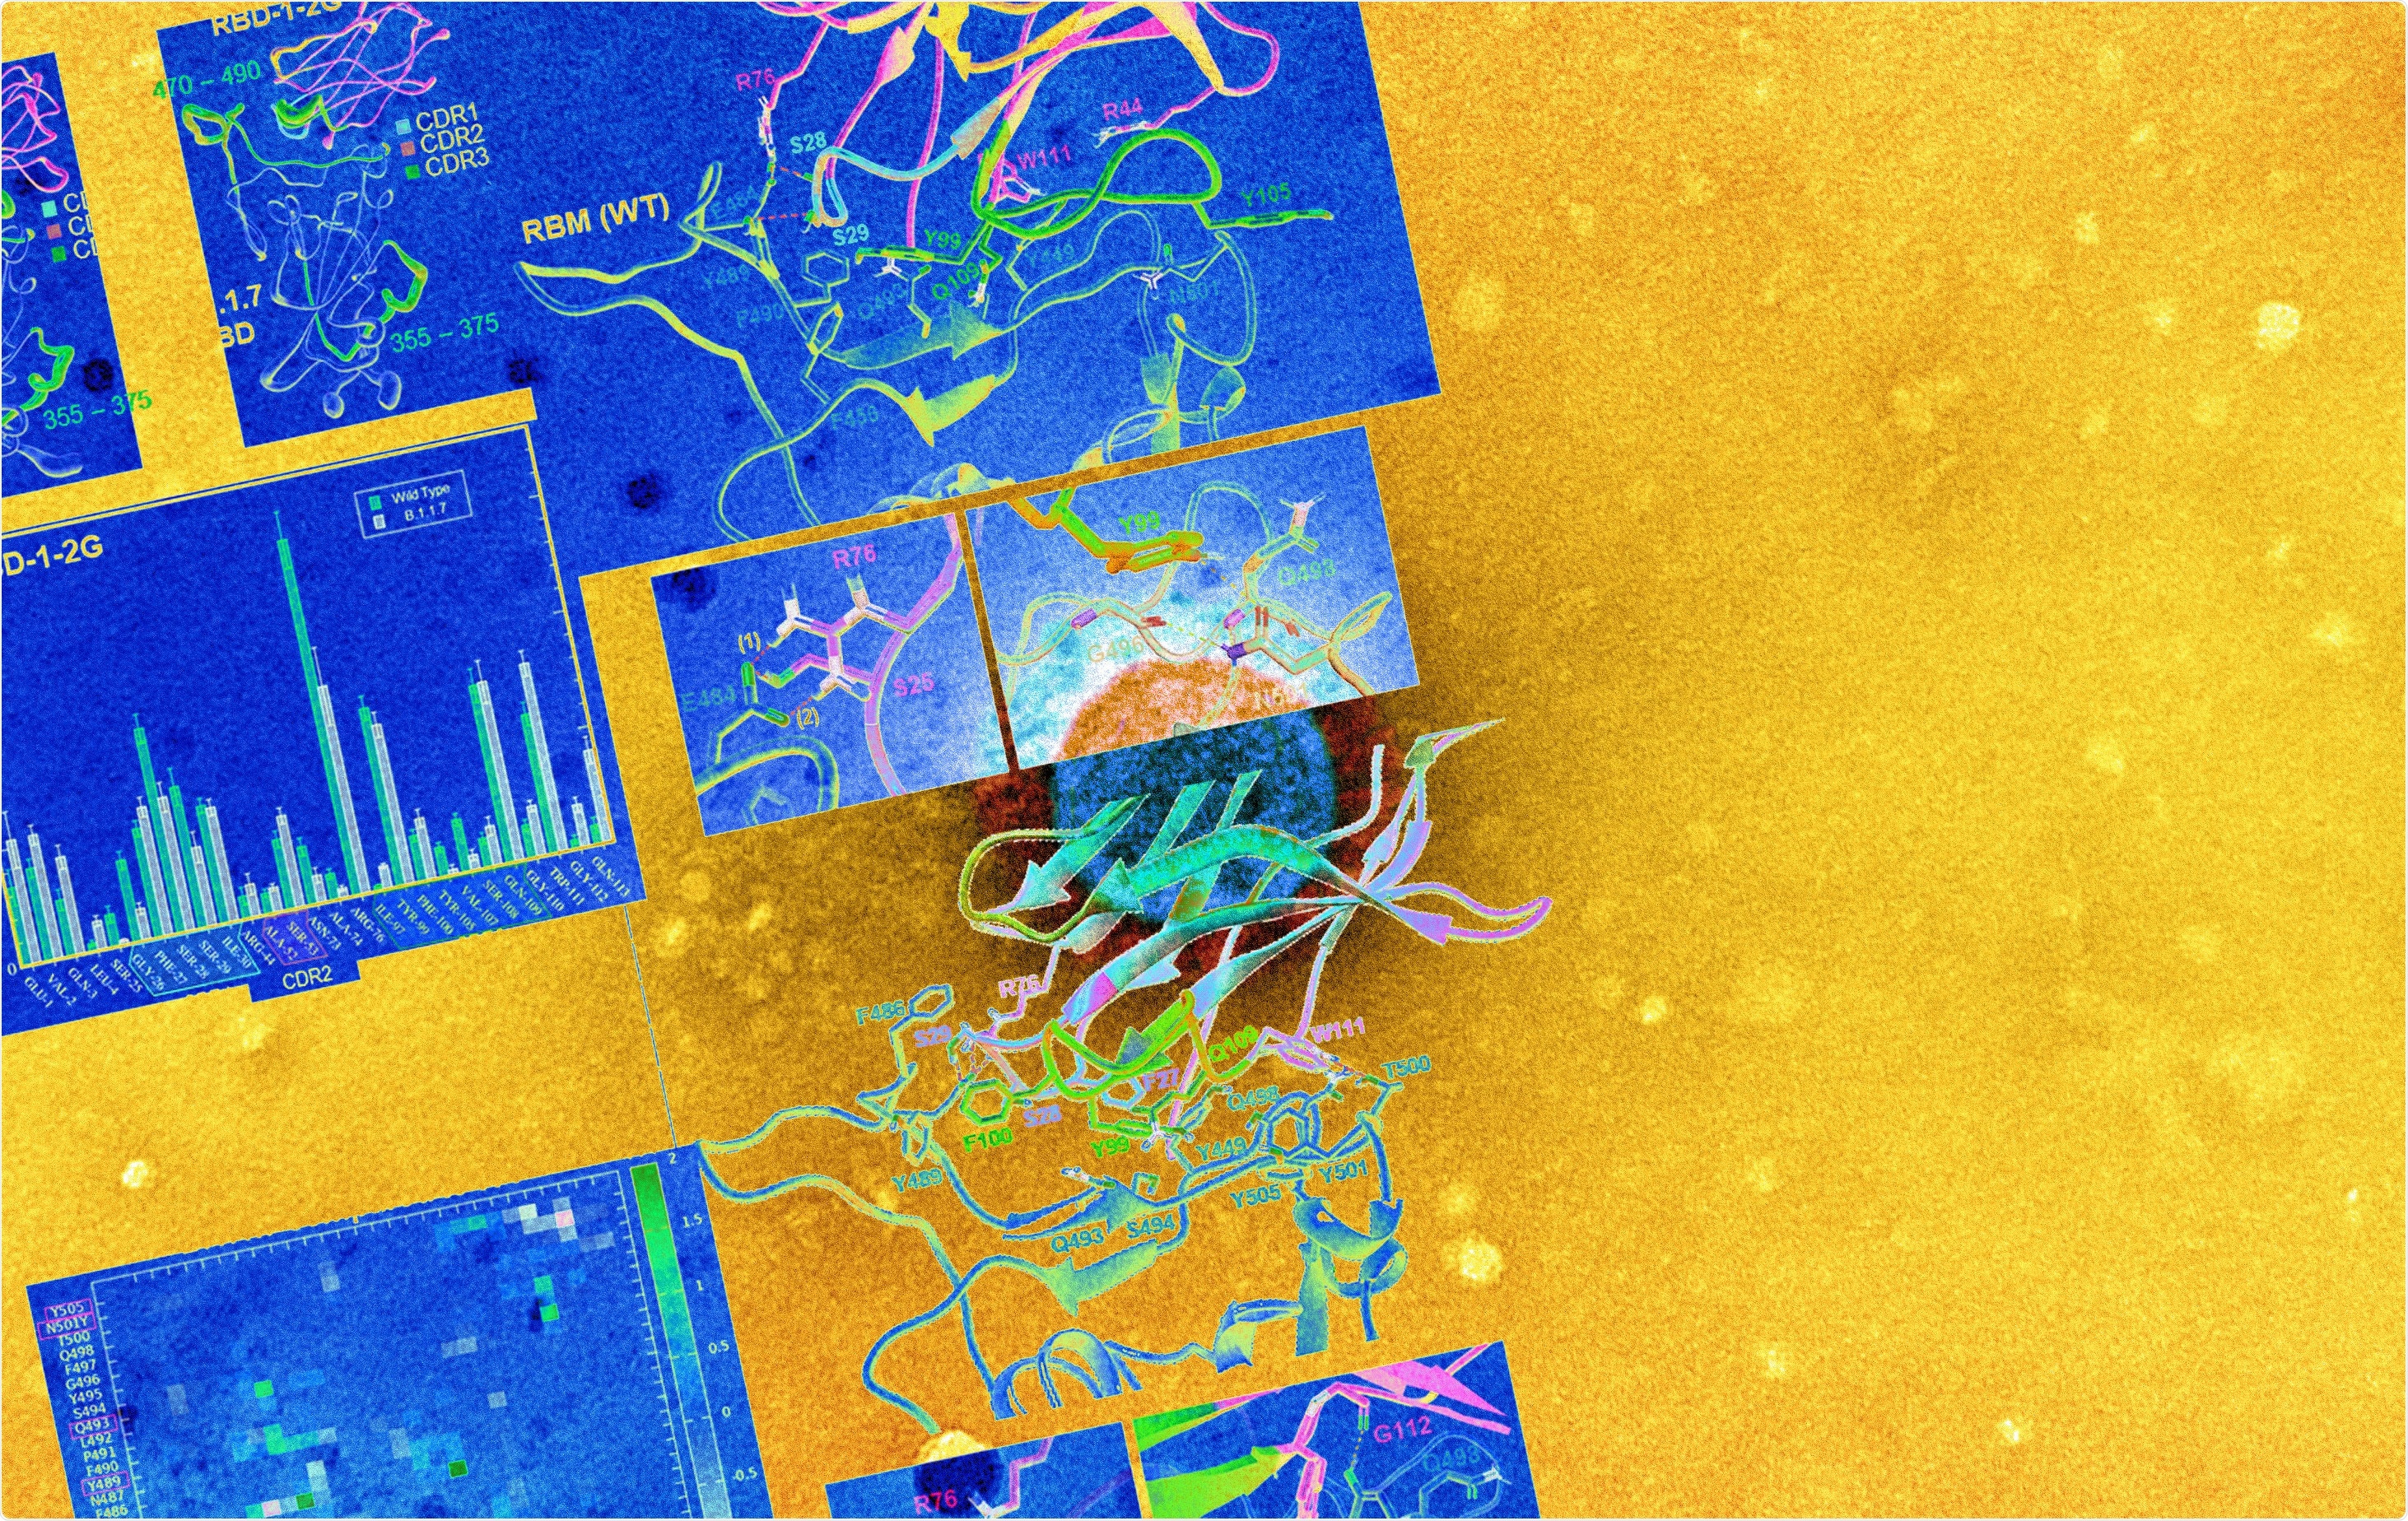 Studio: Il RBD-1-2G nanobody umanizzato tollera la mutazione della punta N501Y per neutralizzare SARS-CoV-2. Credito di immagine: NIAID